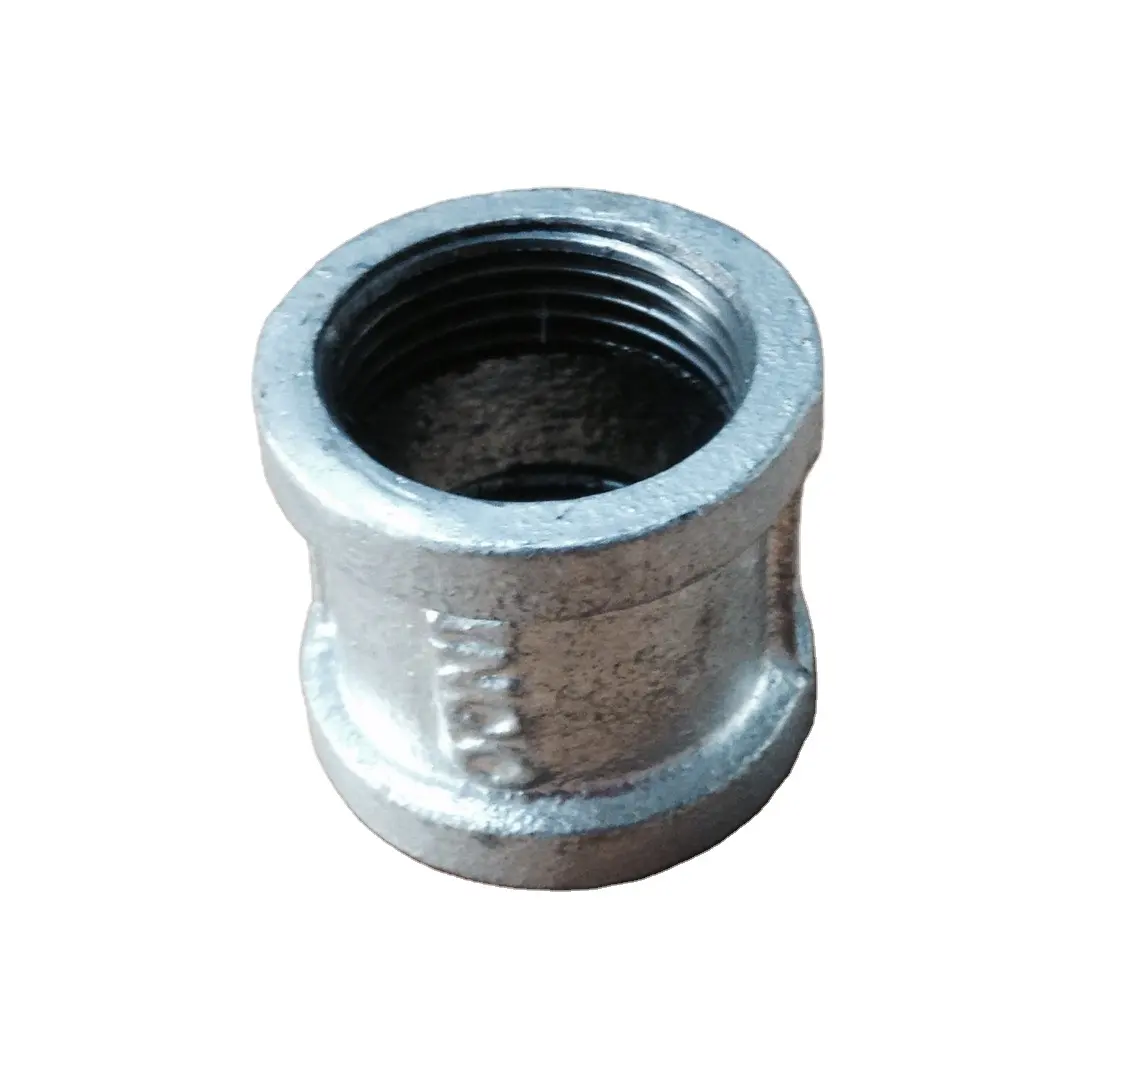 Hembra reducir 240*3/4*1/2 "de hierro maleable Pip de Dim 39 Acero inoxidable ansi/asme b16.22 accesorios para tubería de cobre